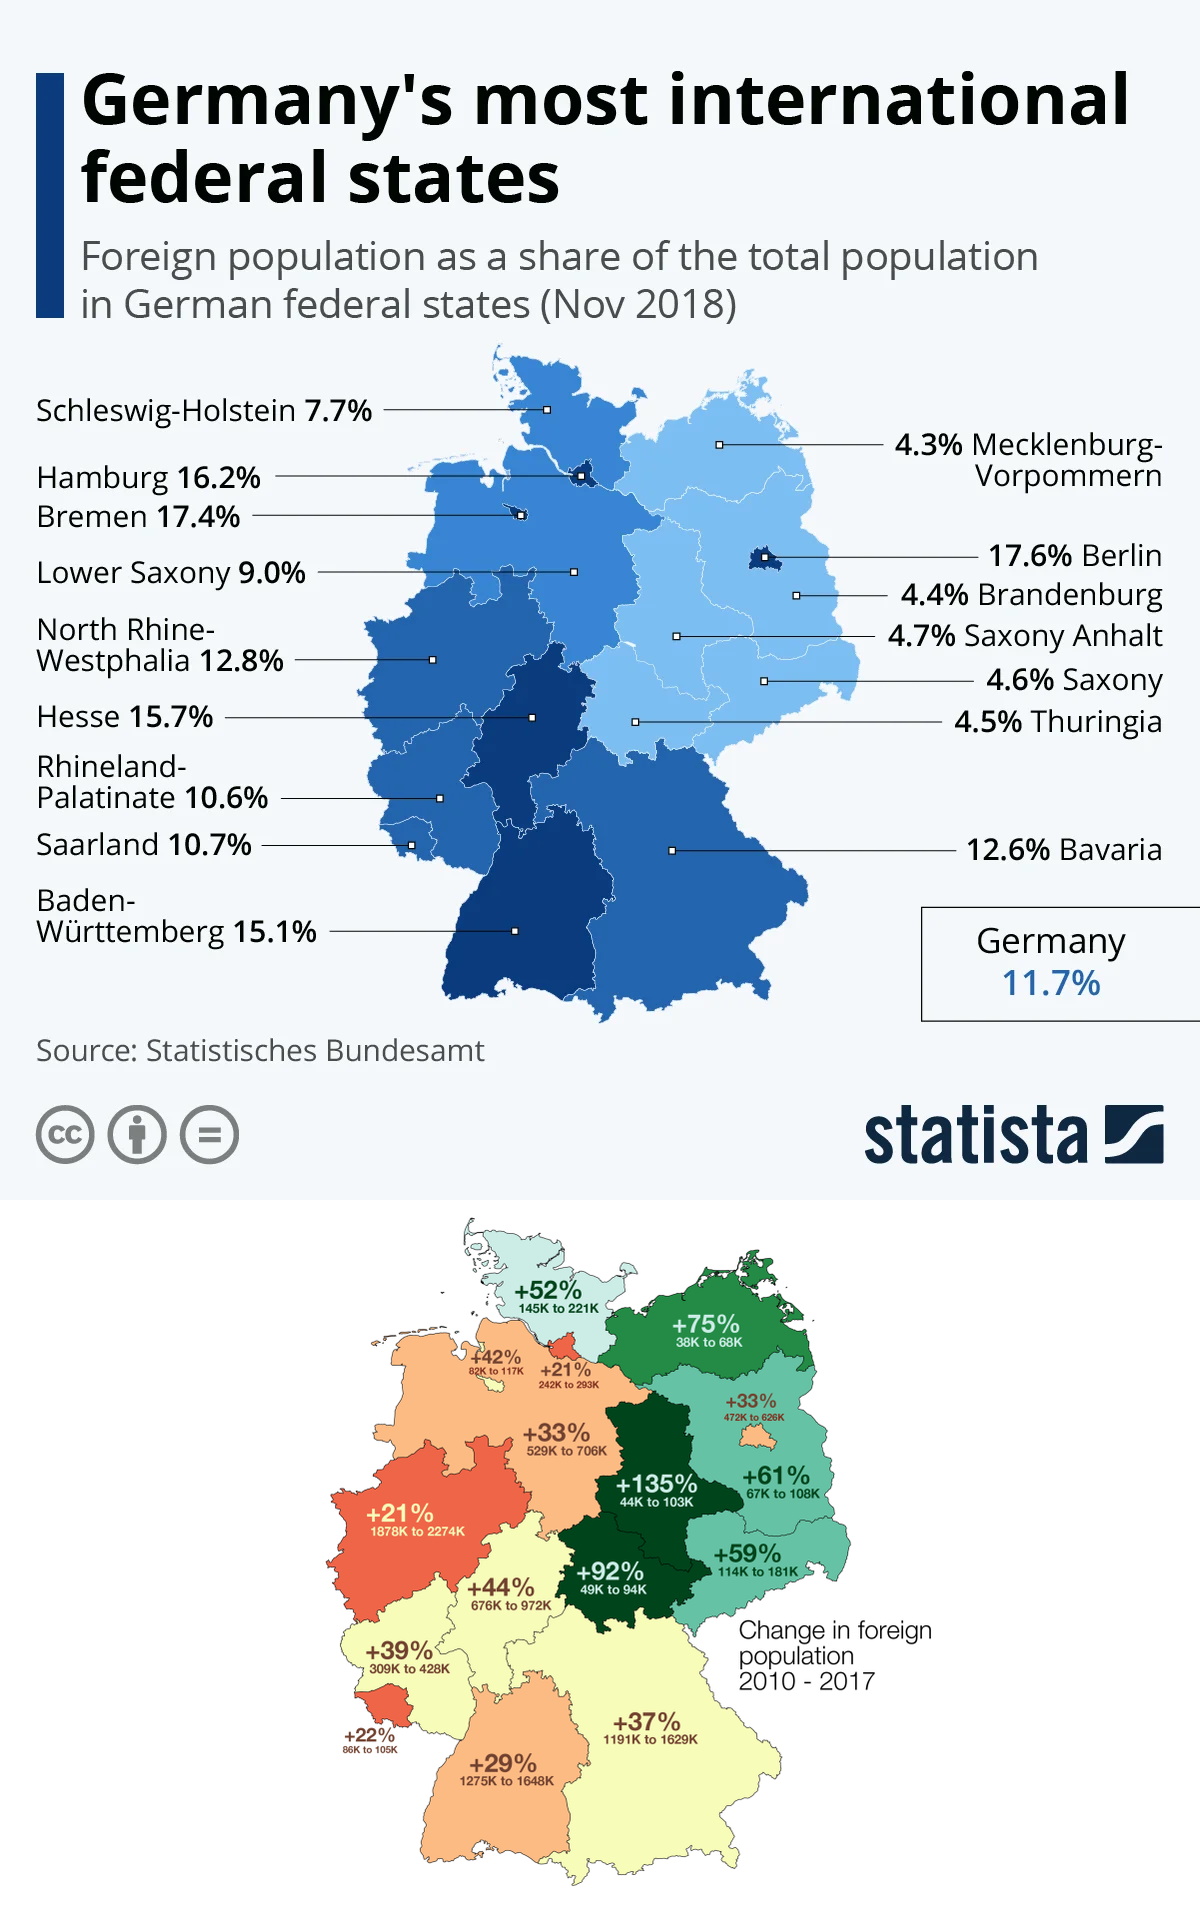 Odsetek osób w Niemczech urodzonych za granicą, 2018, 2010 vs. 2017